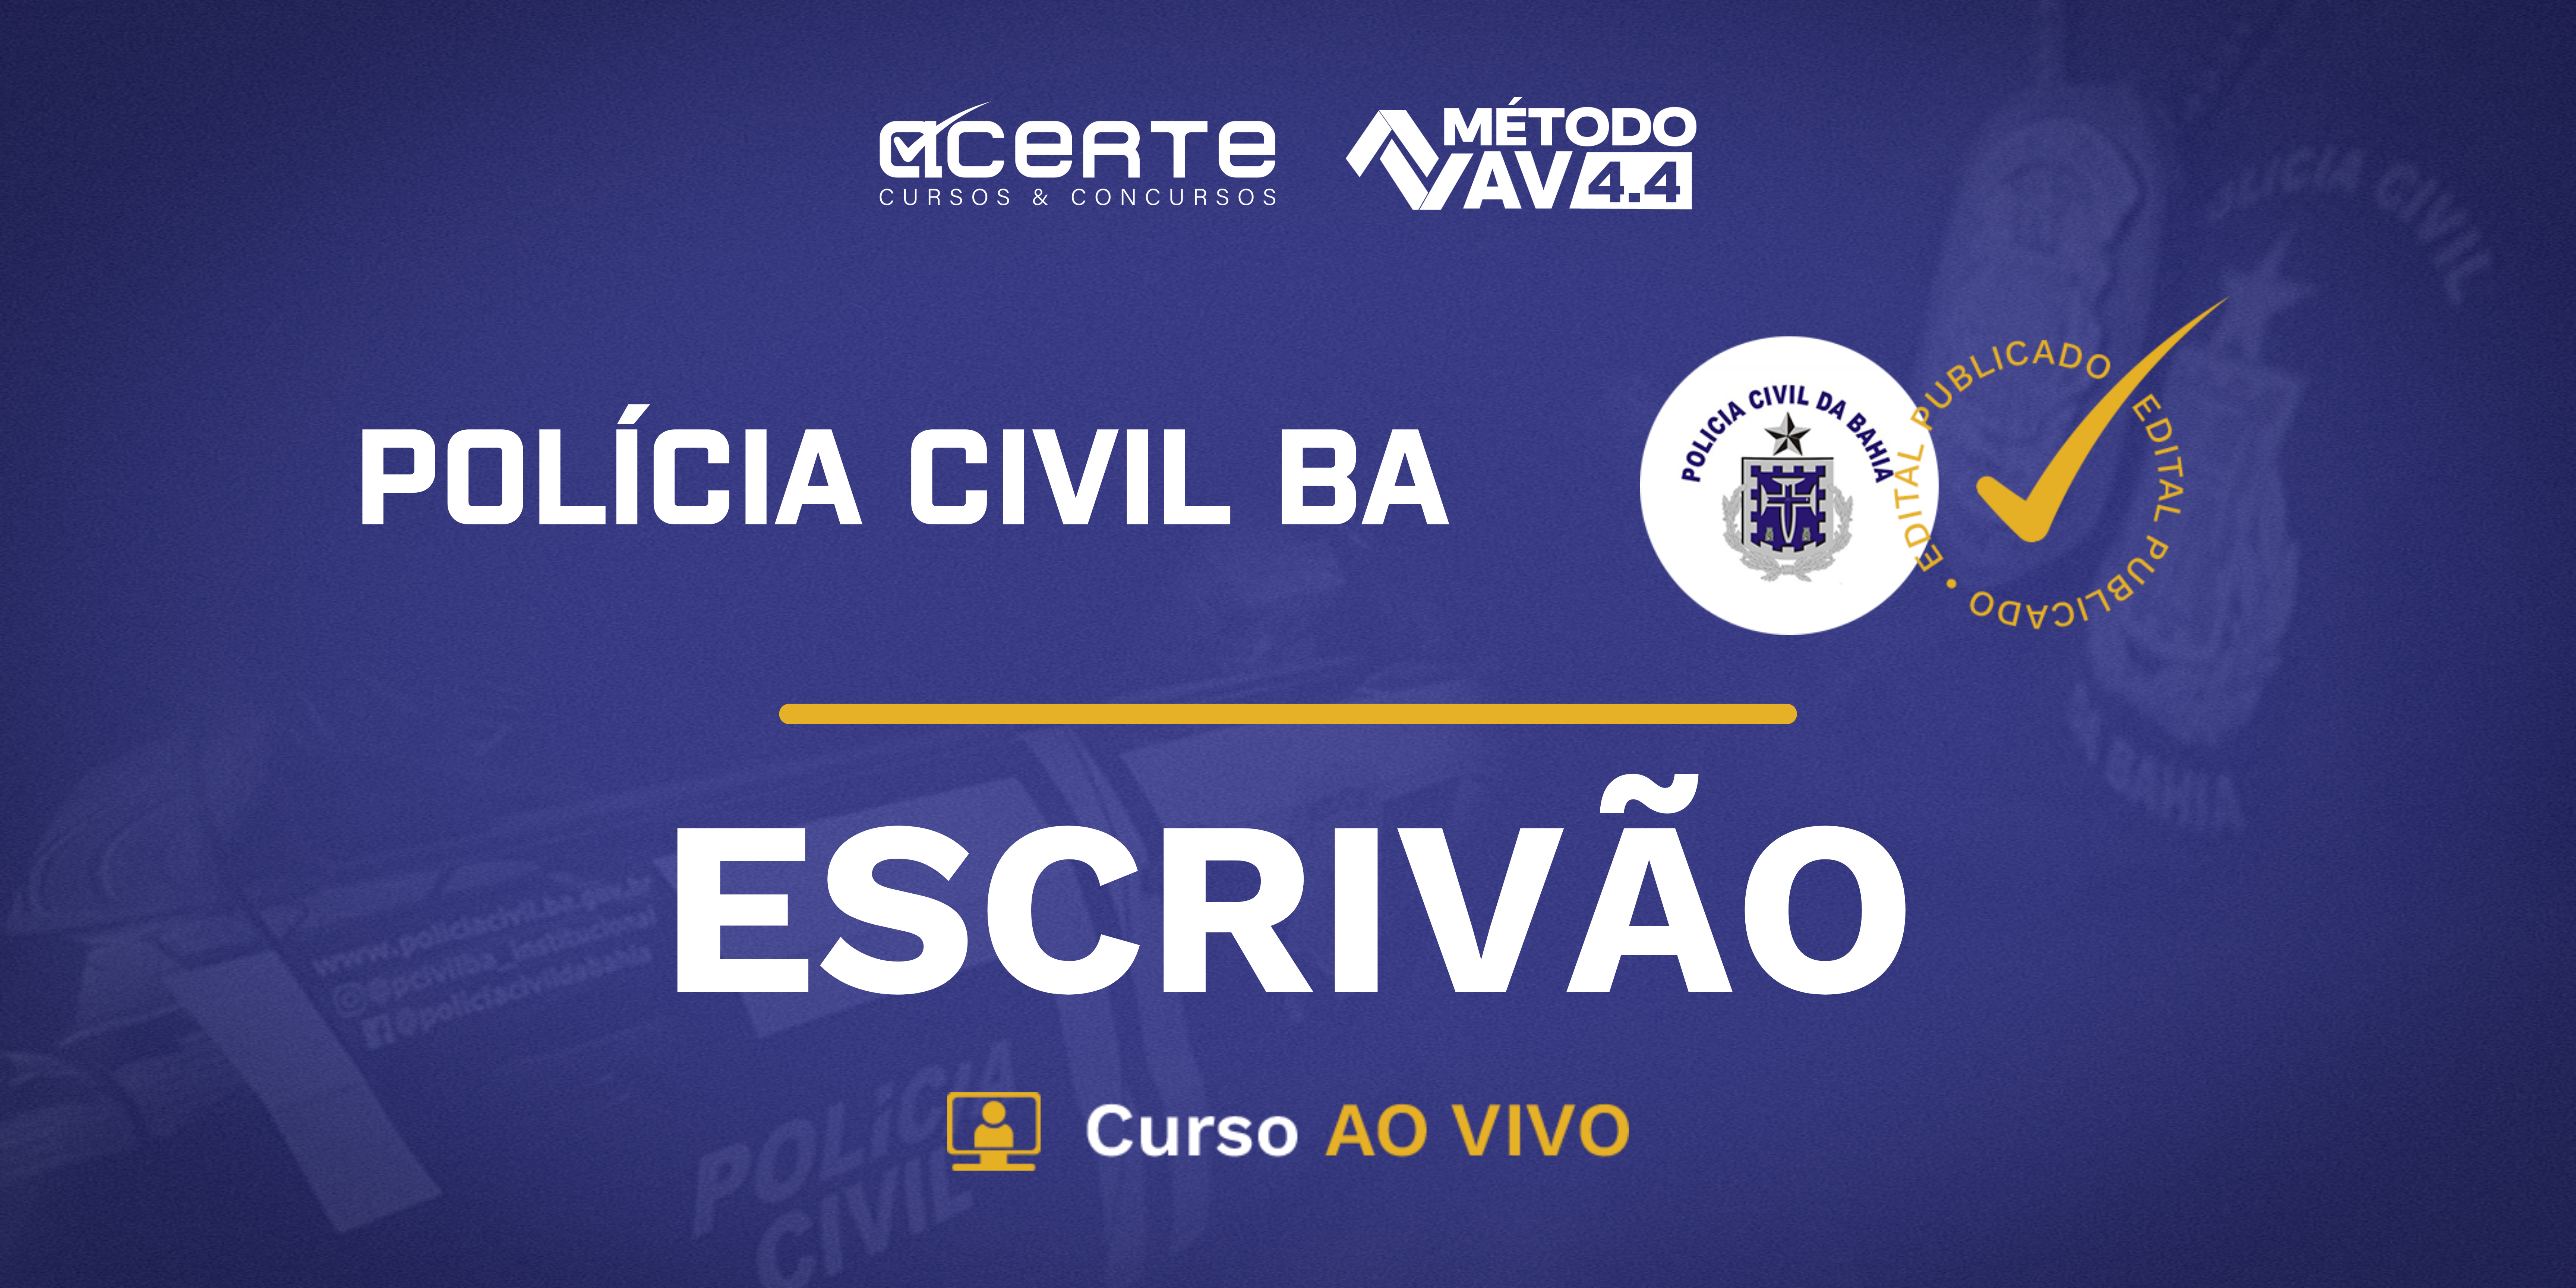 Método AV 4.4 - Polícia Civil da Bahia - Escrivão - AO VIVO